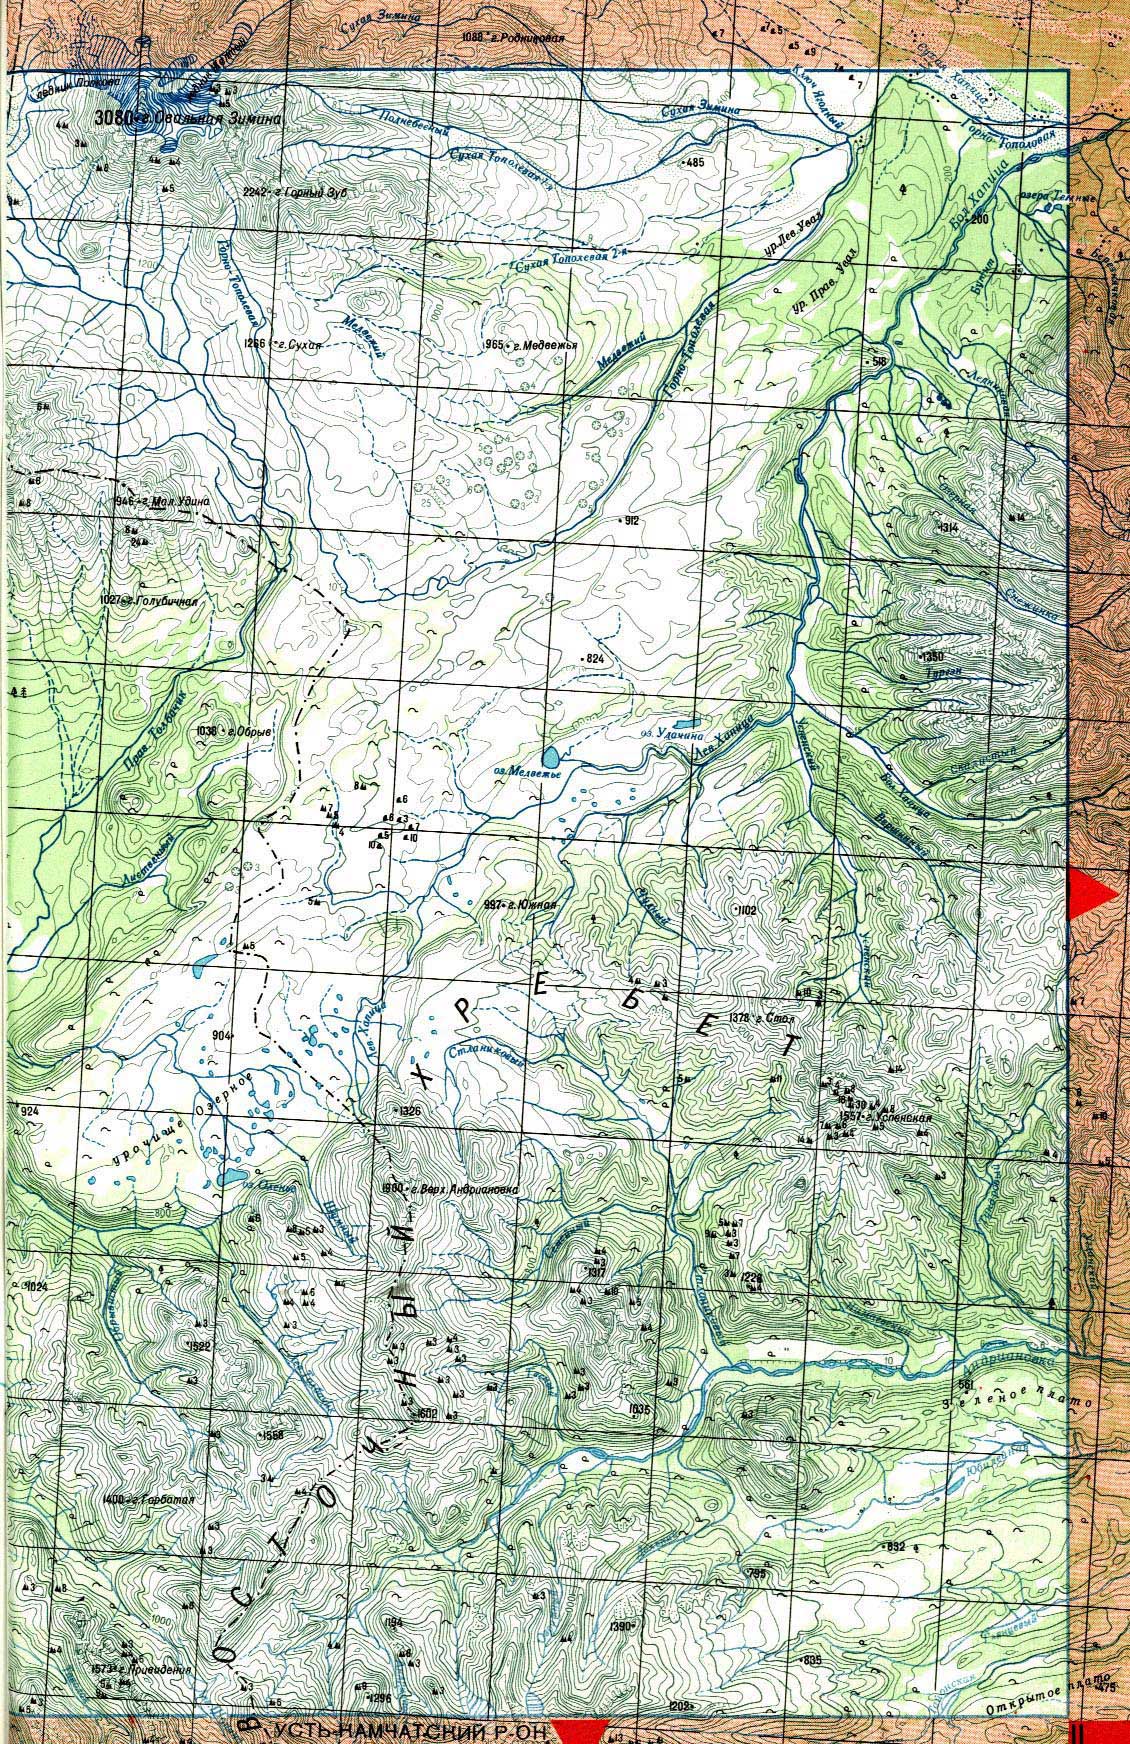 Карта Камчатки: Восточный хребет, река Хапица, река Андриановка, вулкан Овальная Зимина. Карта Центральной и Южной Камчатки. Топографическая карта Камчатского края